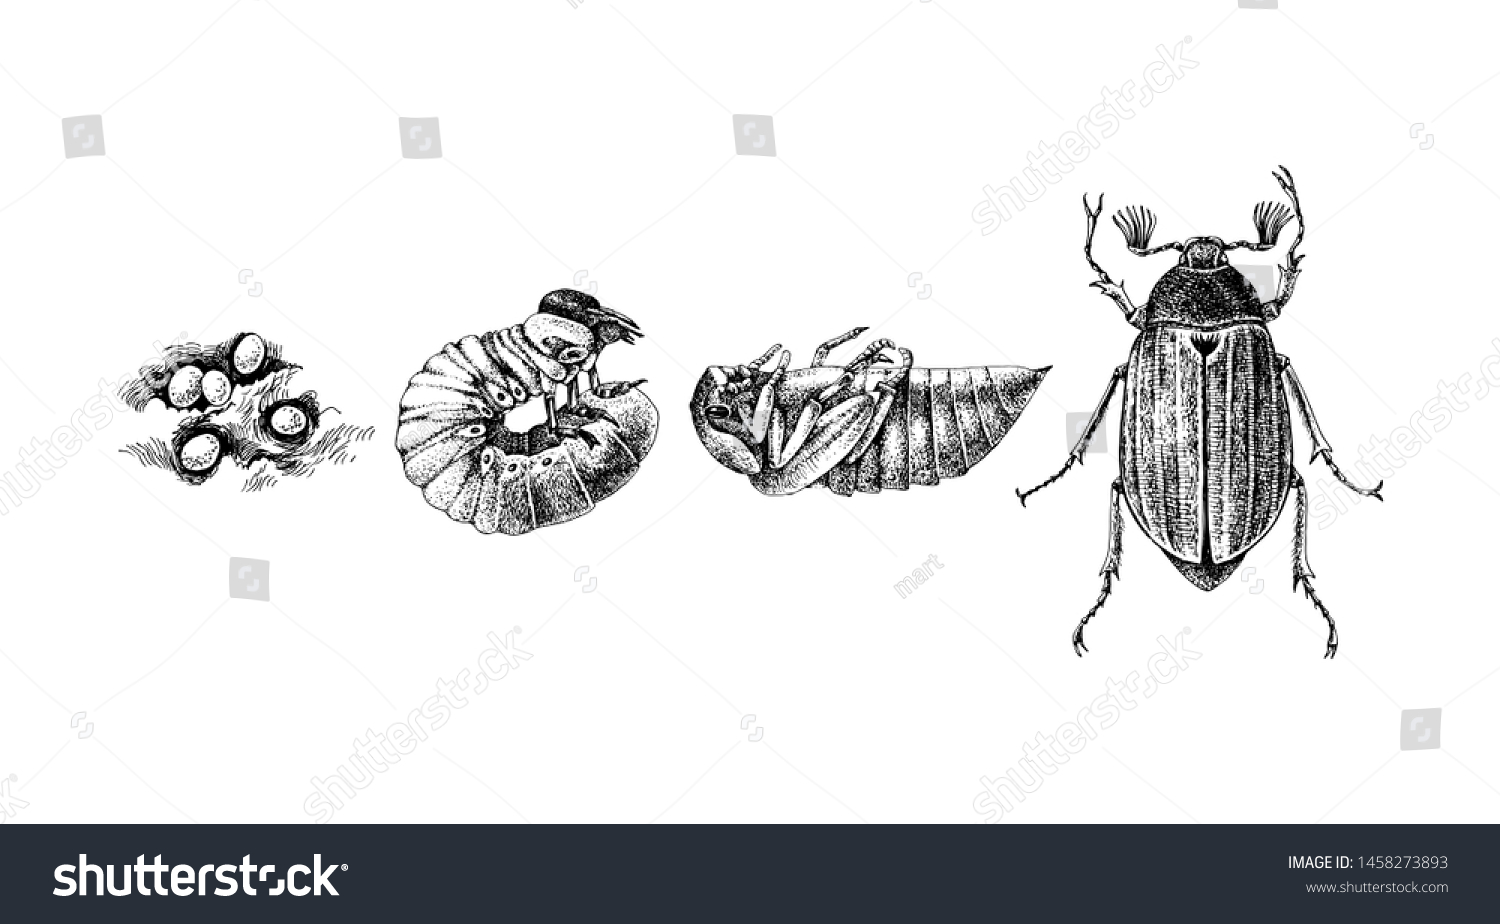 Цикл жизни майского жука